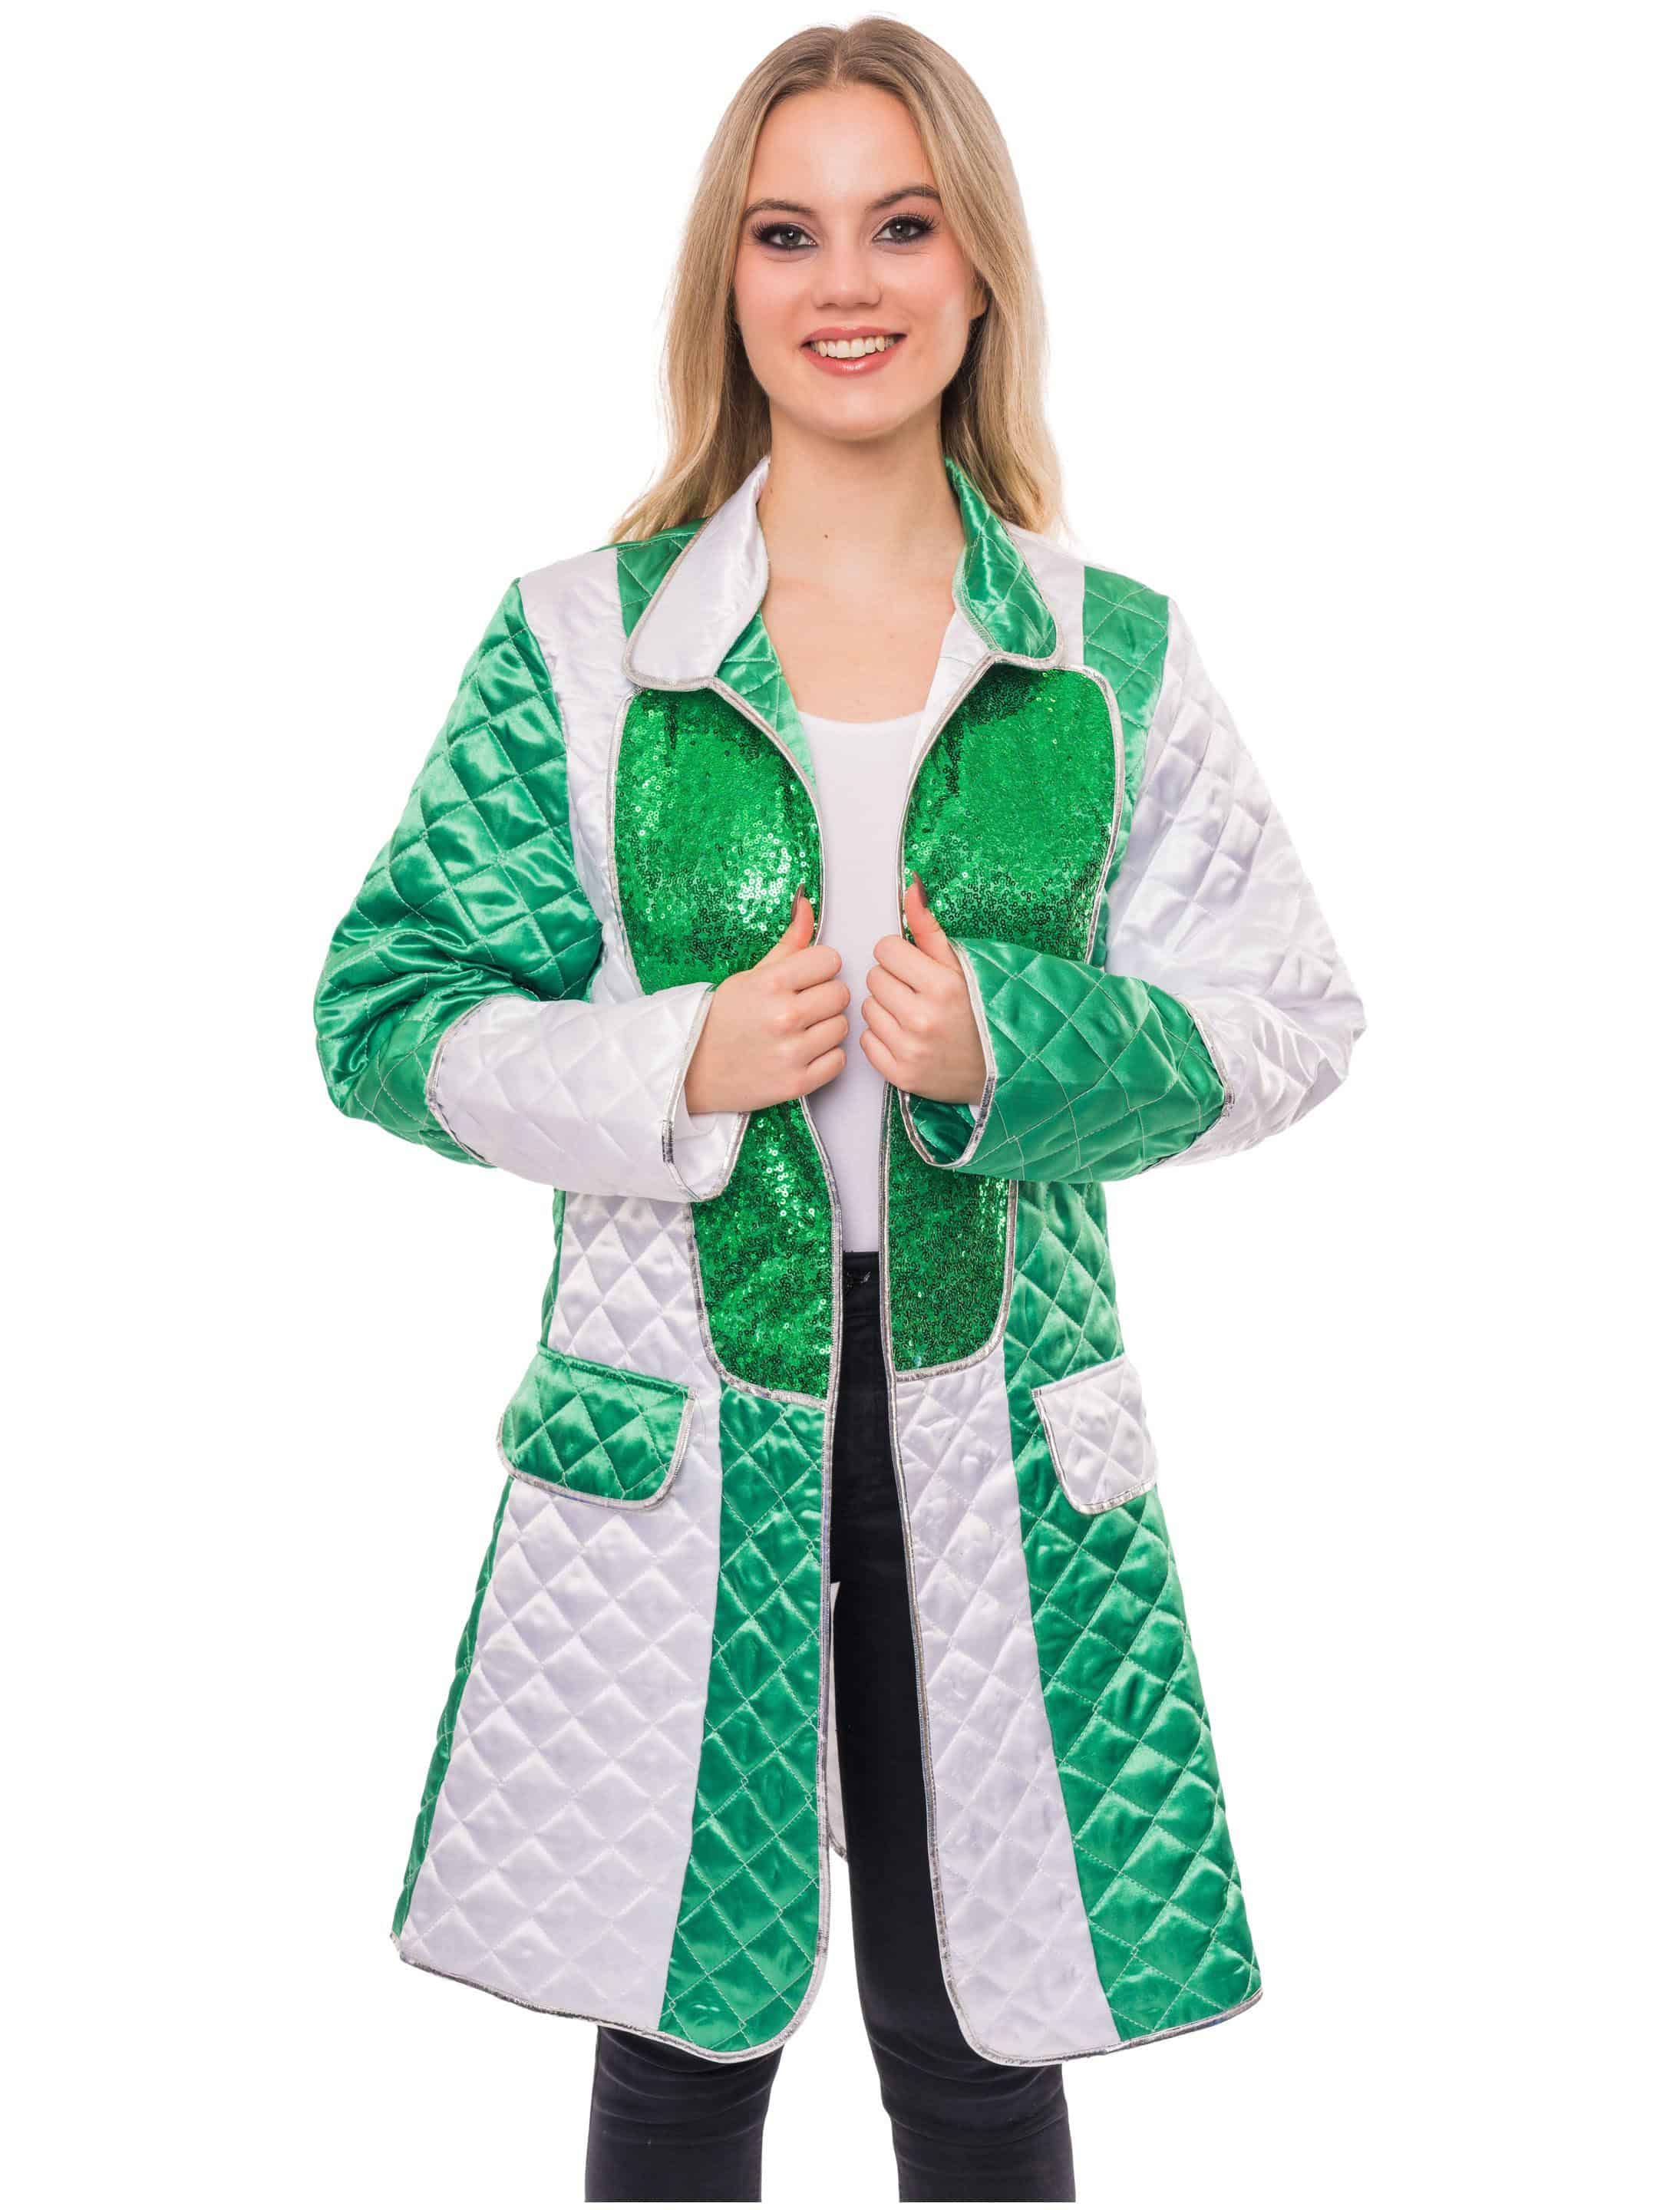 Mantel gesteppt Damen grün/weiß 3XL